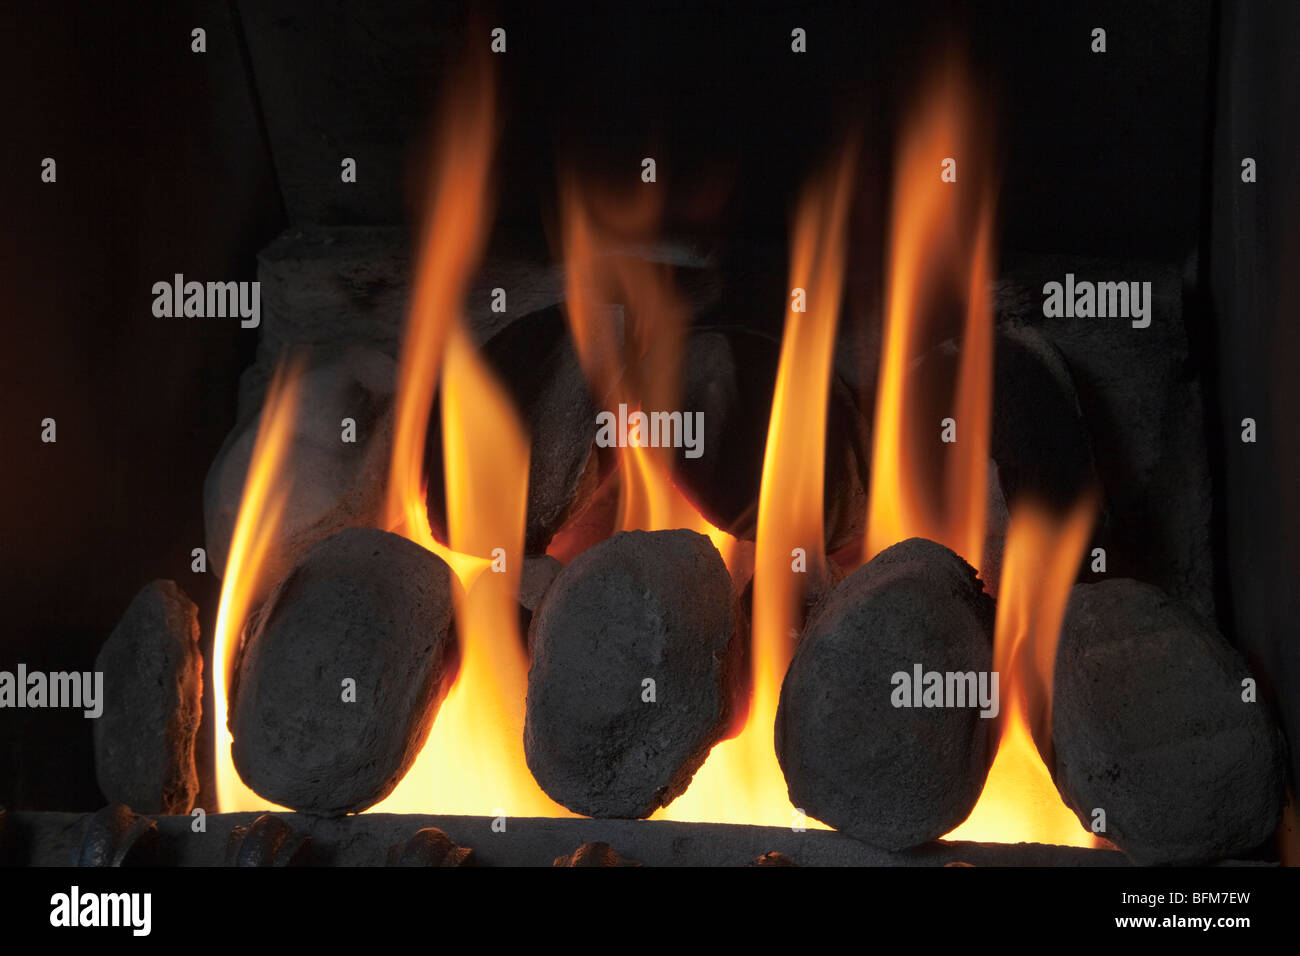 Cerca de un fuego de gas propano artificial con carbones ardiendo en una chimenea interna. Inglaterra, Reino Unido, Gran Bretaña Foto de stock